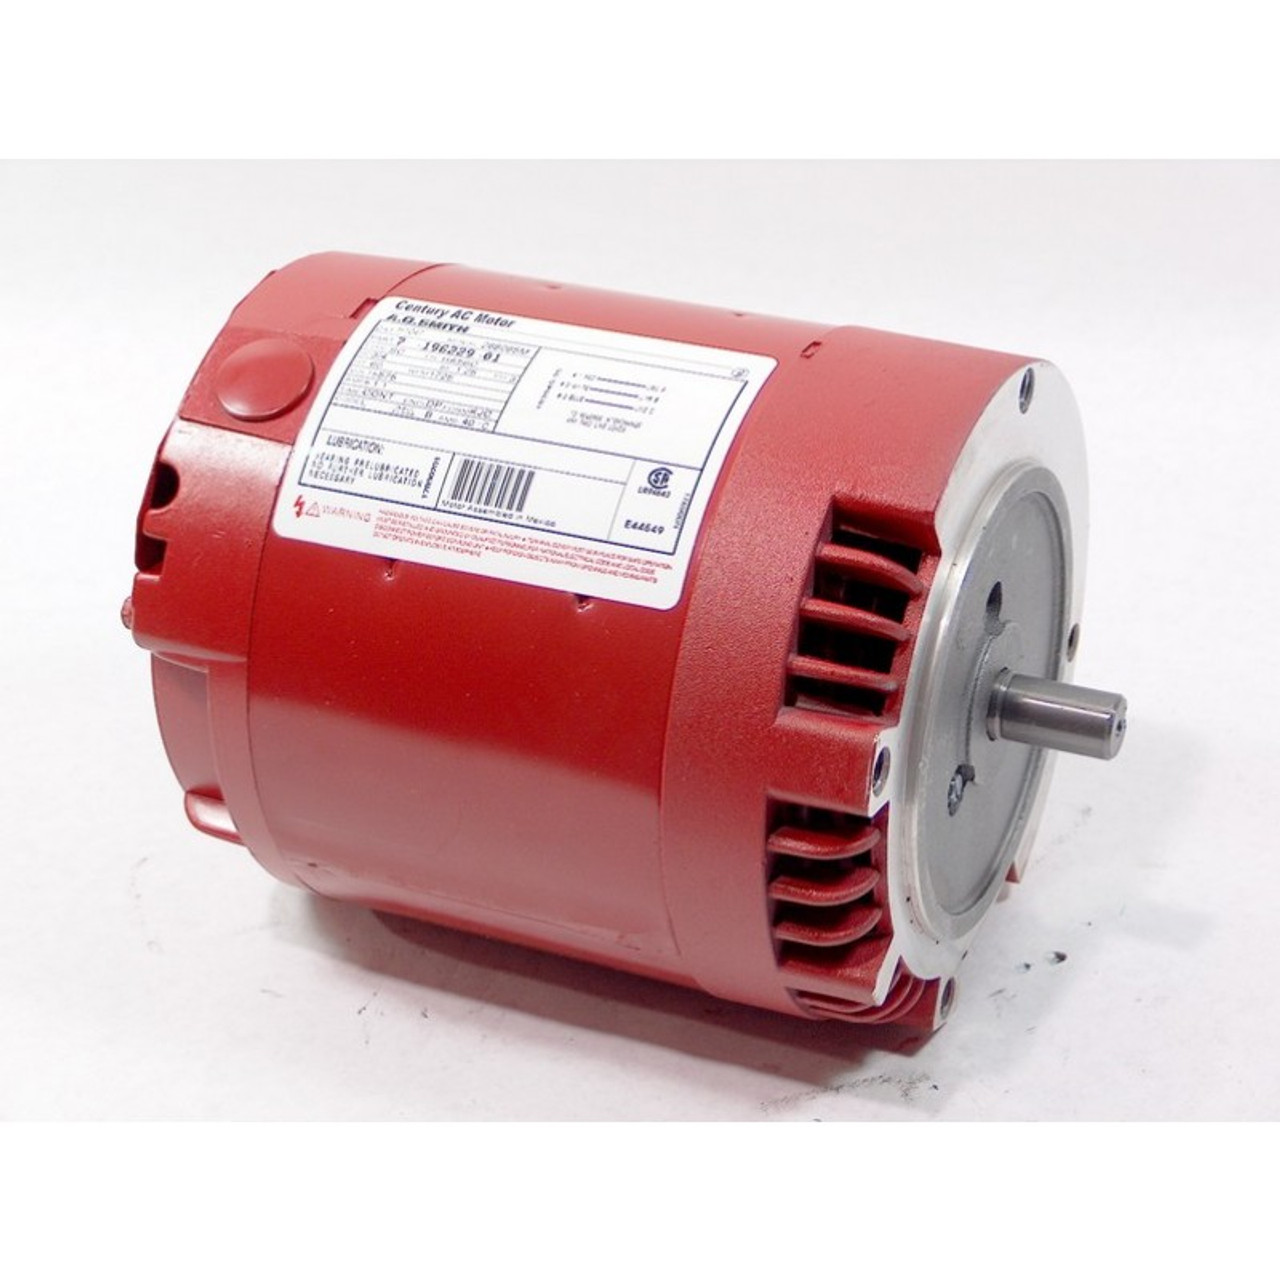 H1047 Hot Water Circulator Pump Motor 3/4 HP